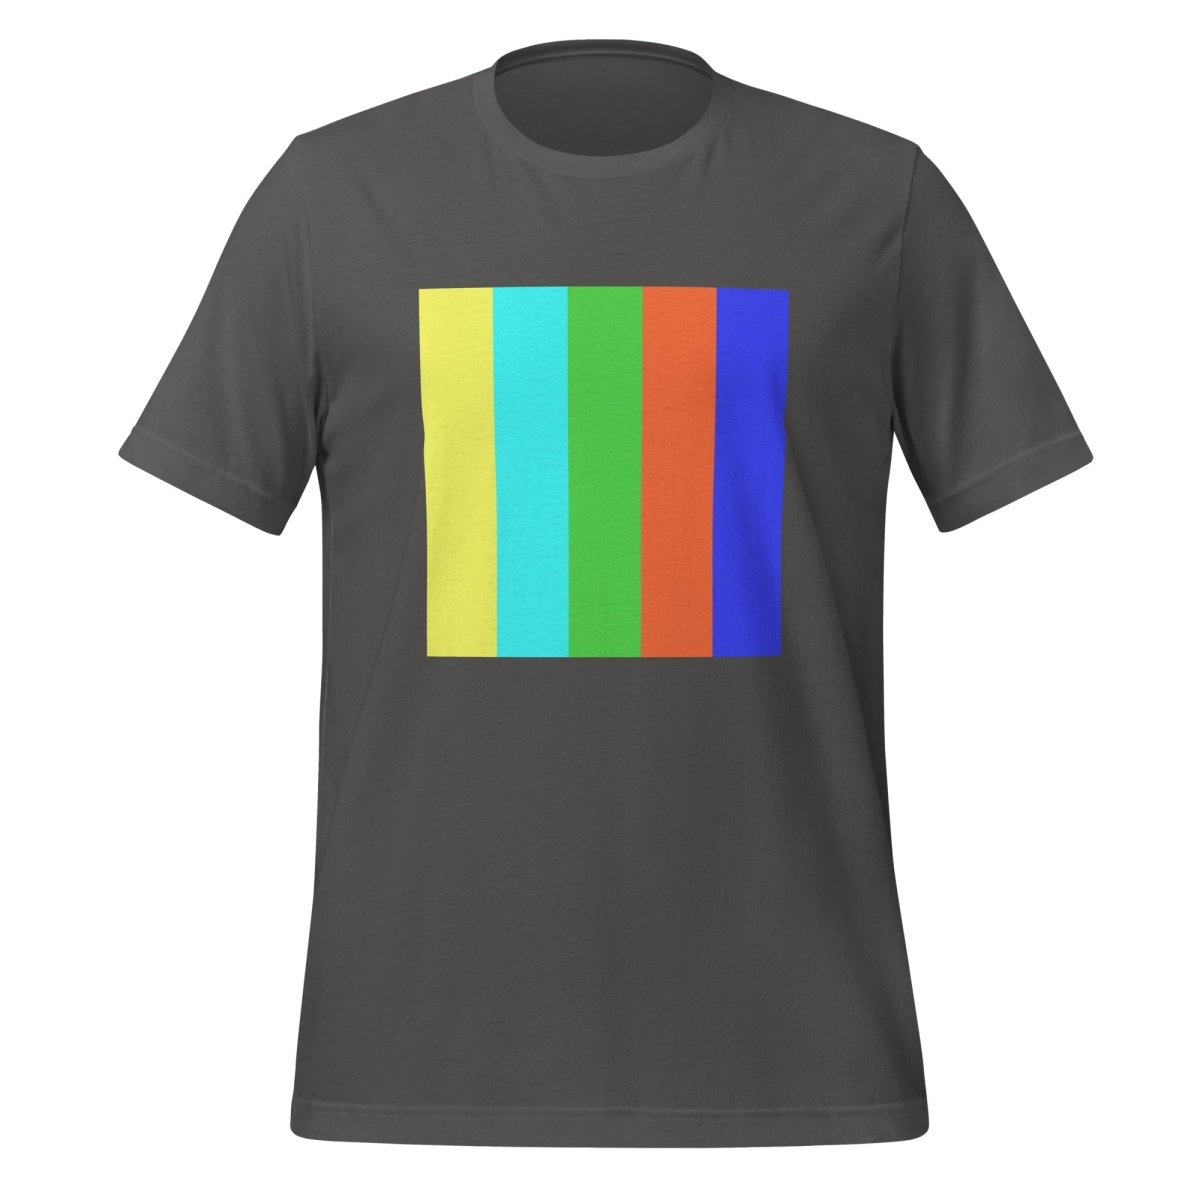 DALL - E 2 Square Watermark T - Shirt (unisex) - Asphalt - AI Store